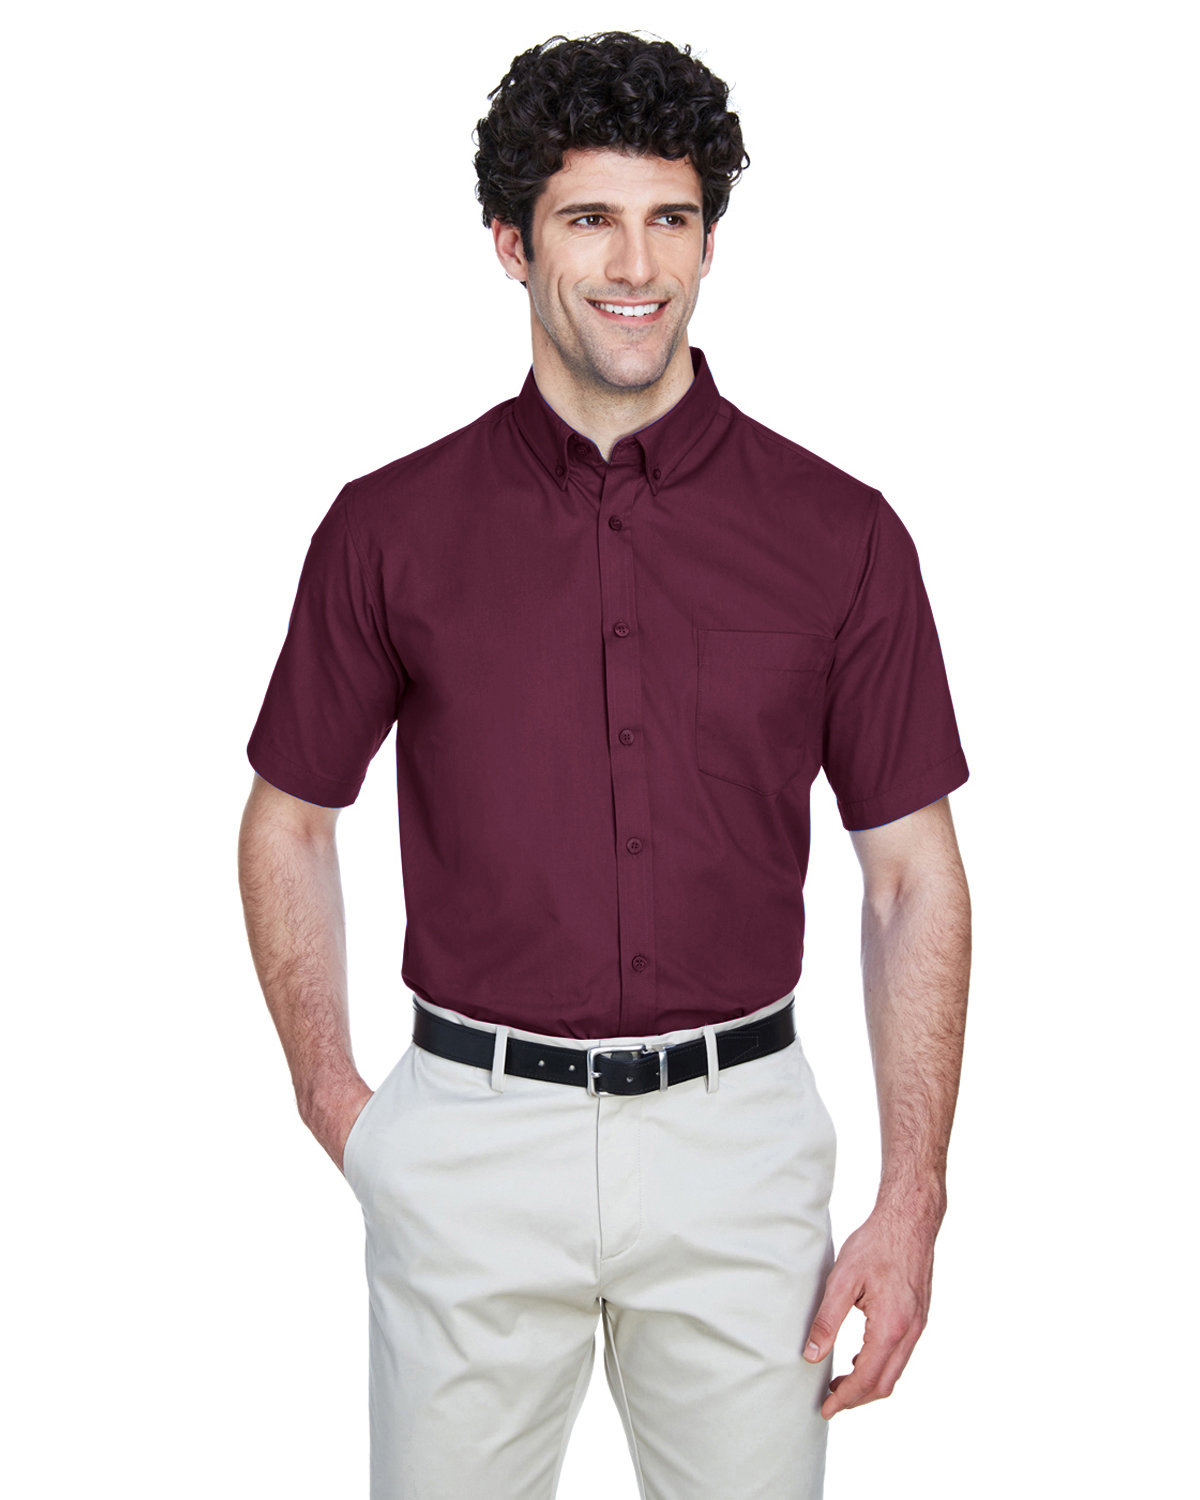 Core365 Men's Optimum Short-Sleeve Twill Shirt BURGUNDY 